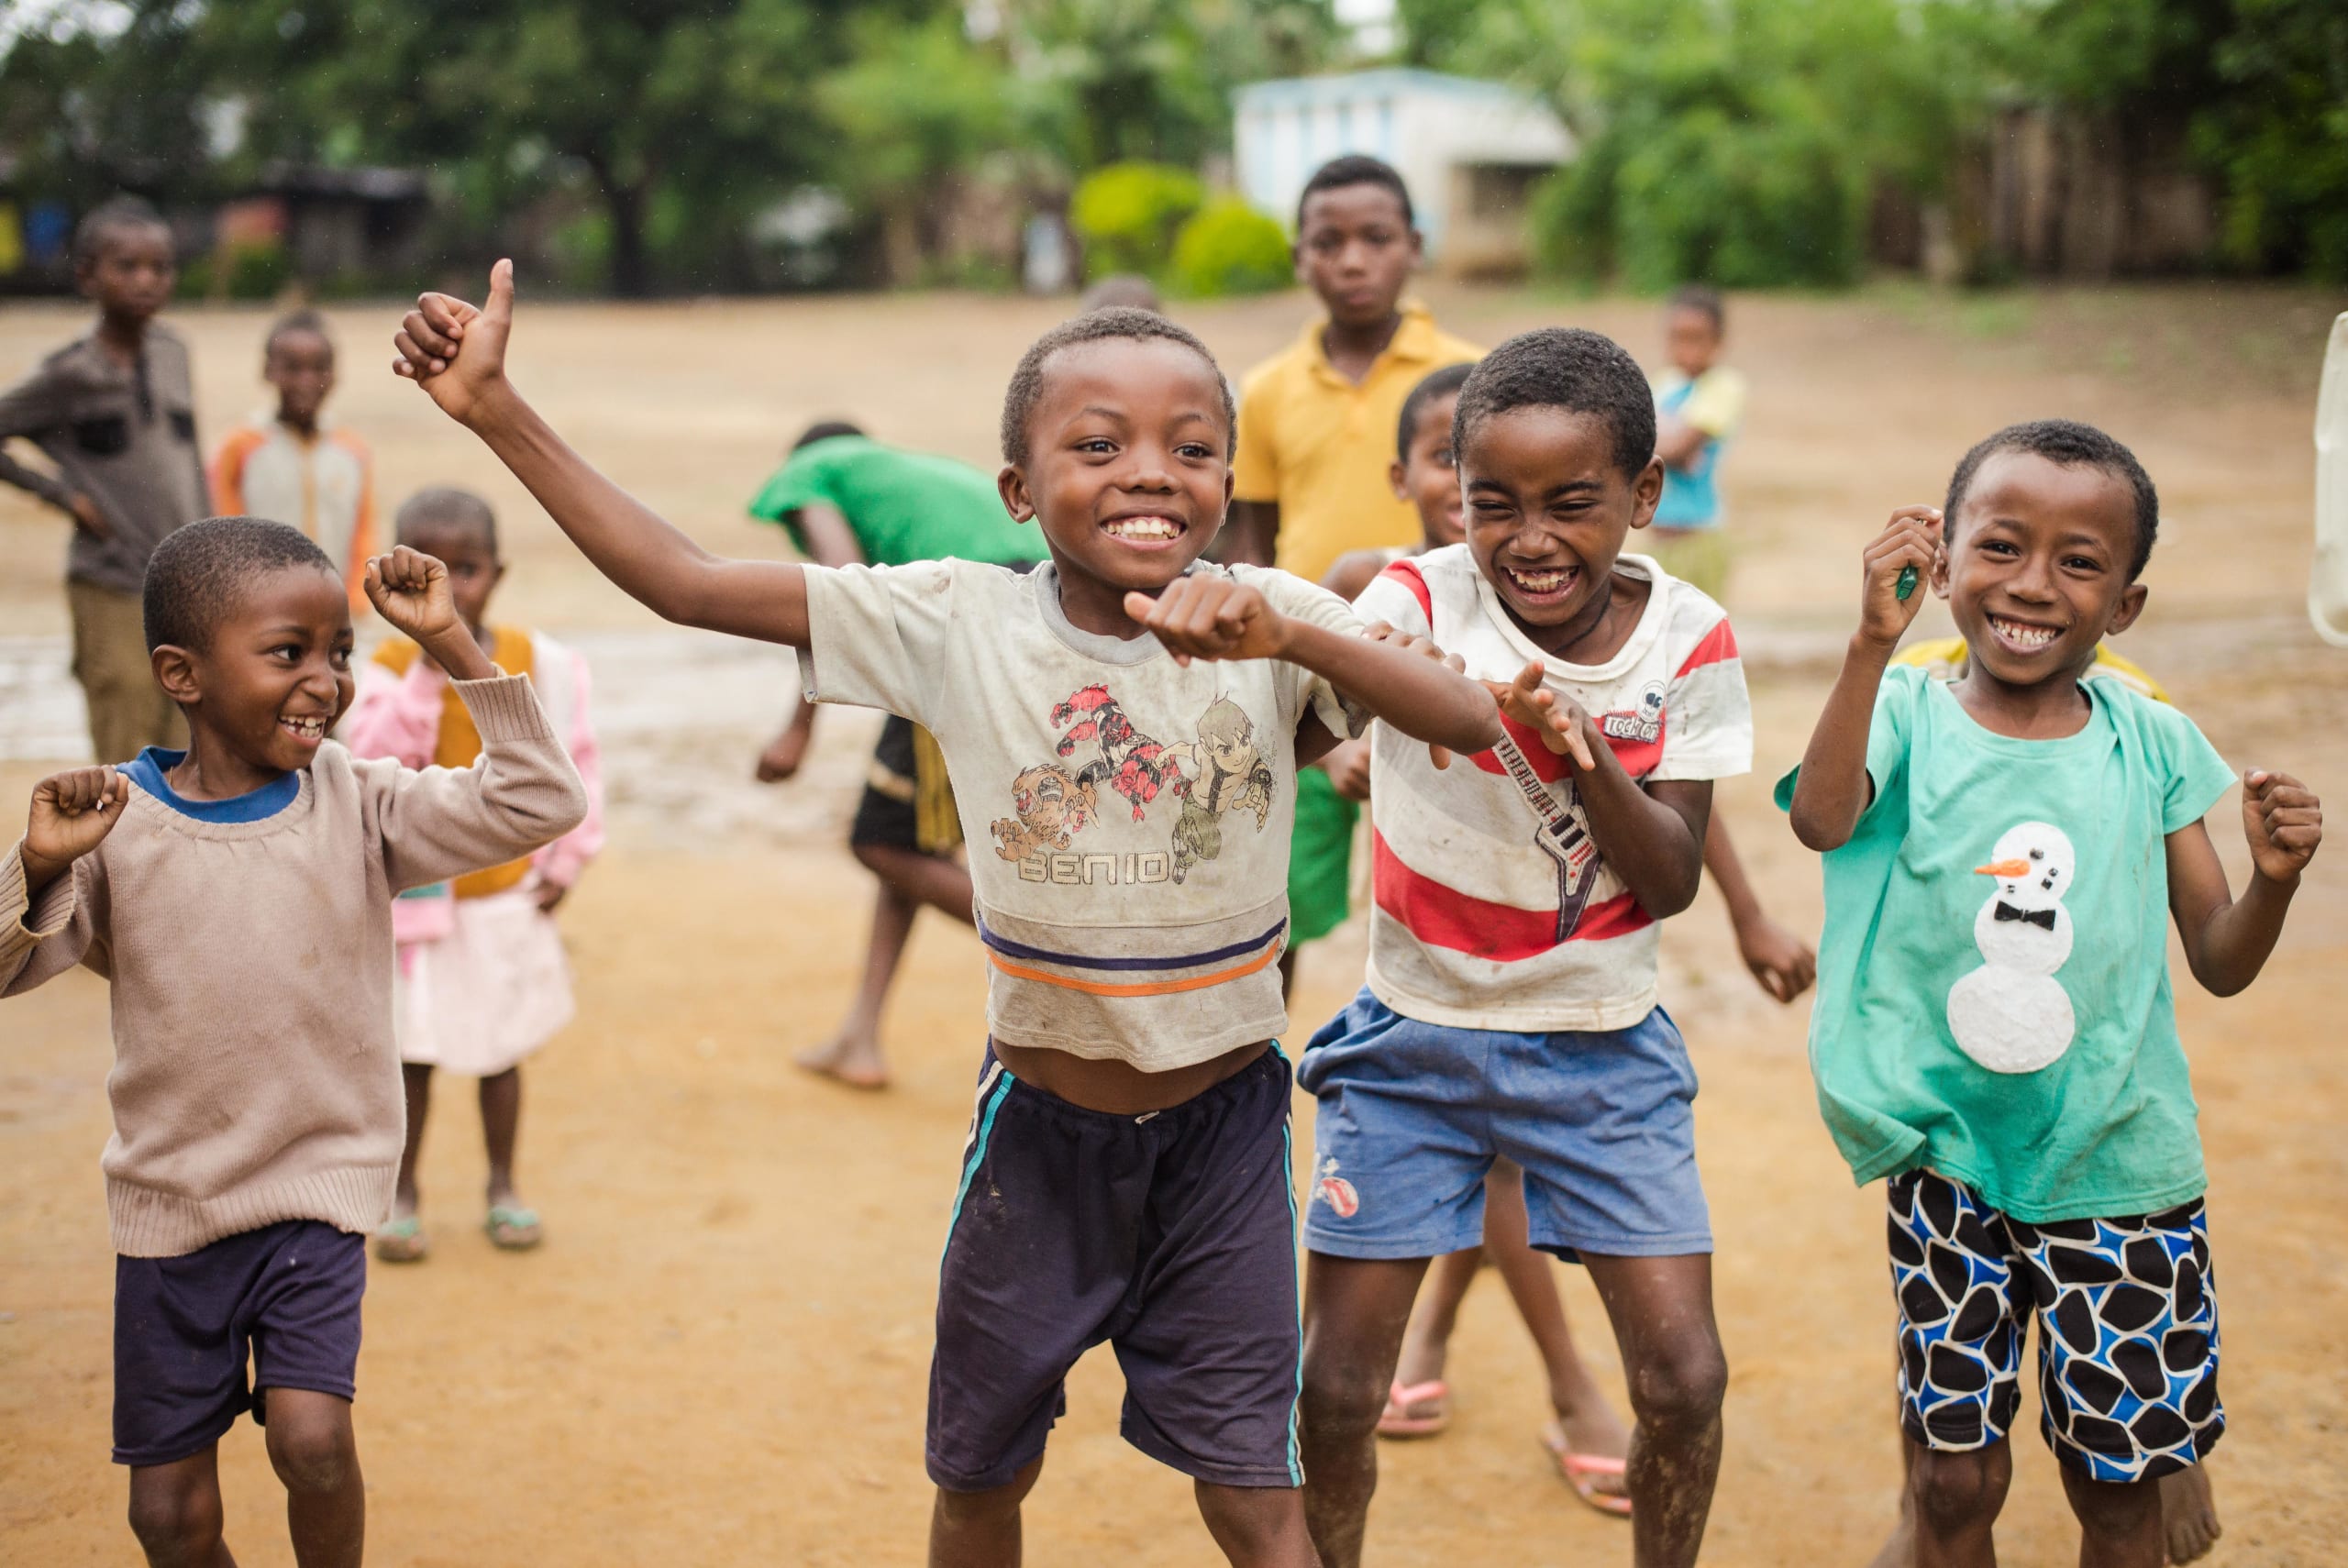 Billede af børn, der smiler og griner i Madagaskar